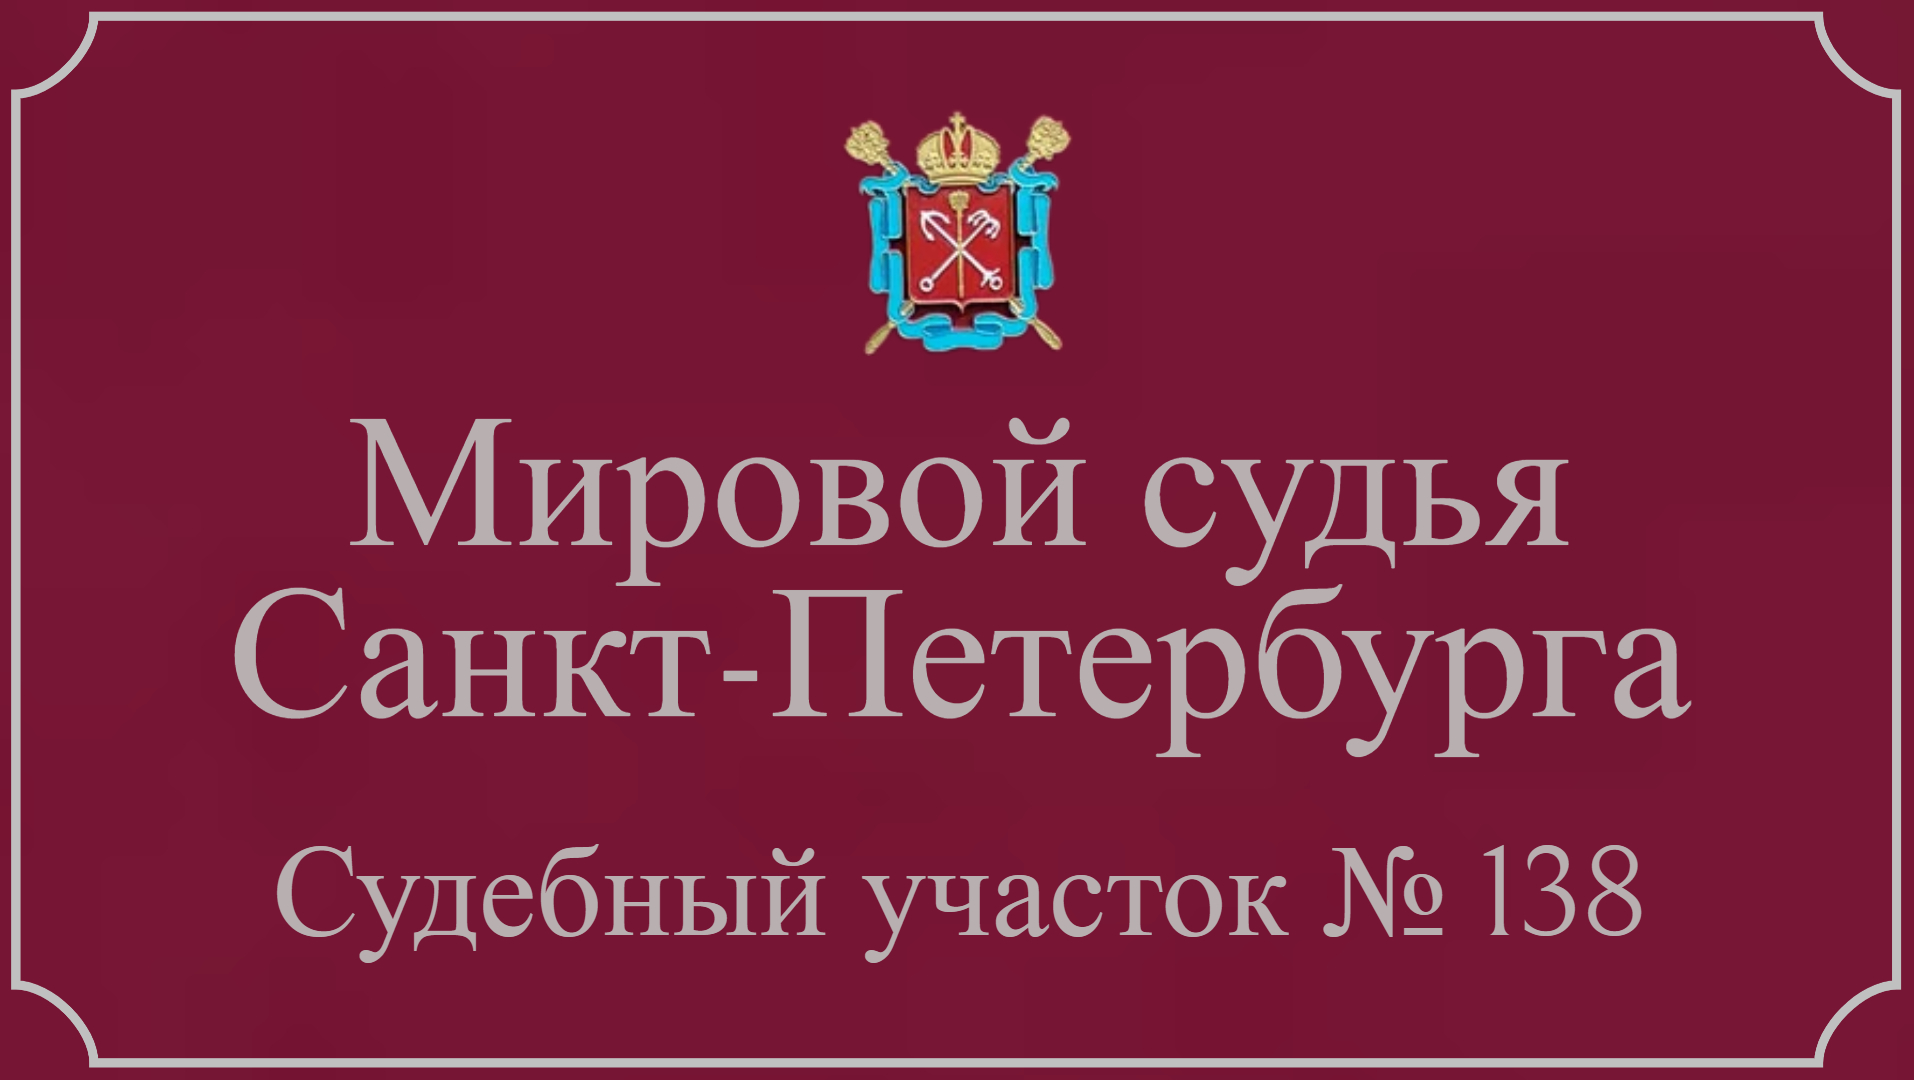 Информация по 138 судебному участку в Санкт-Петербурге.